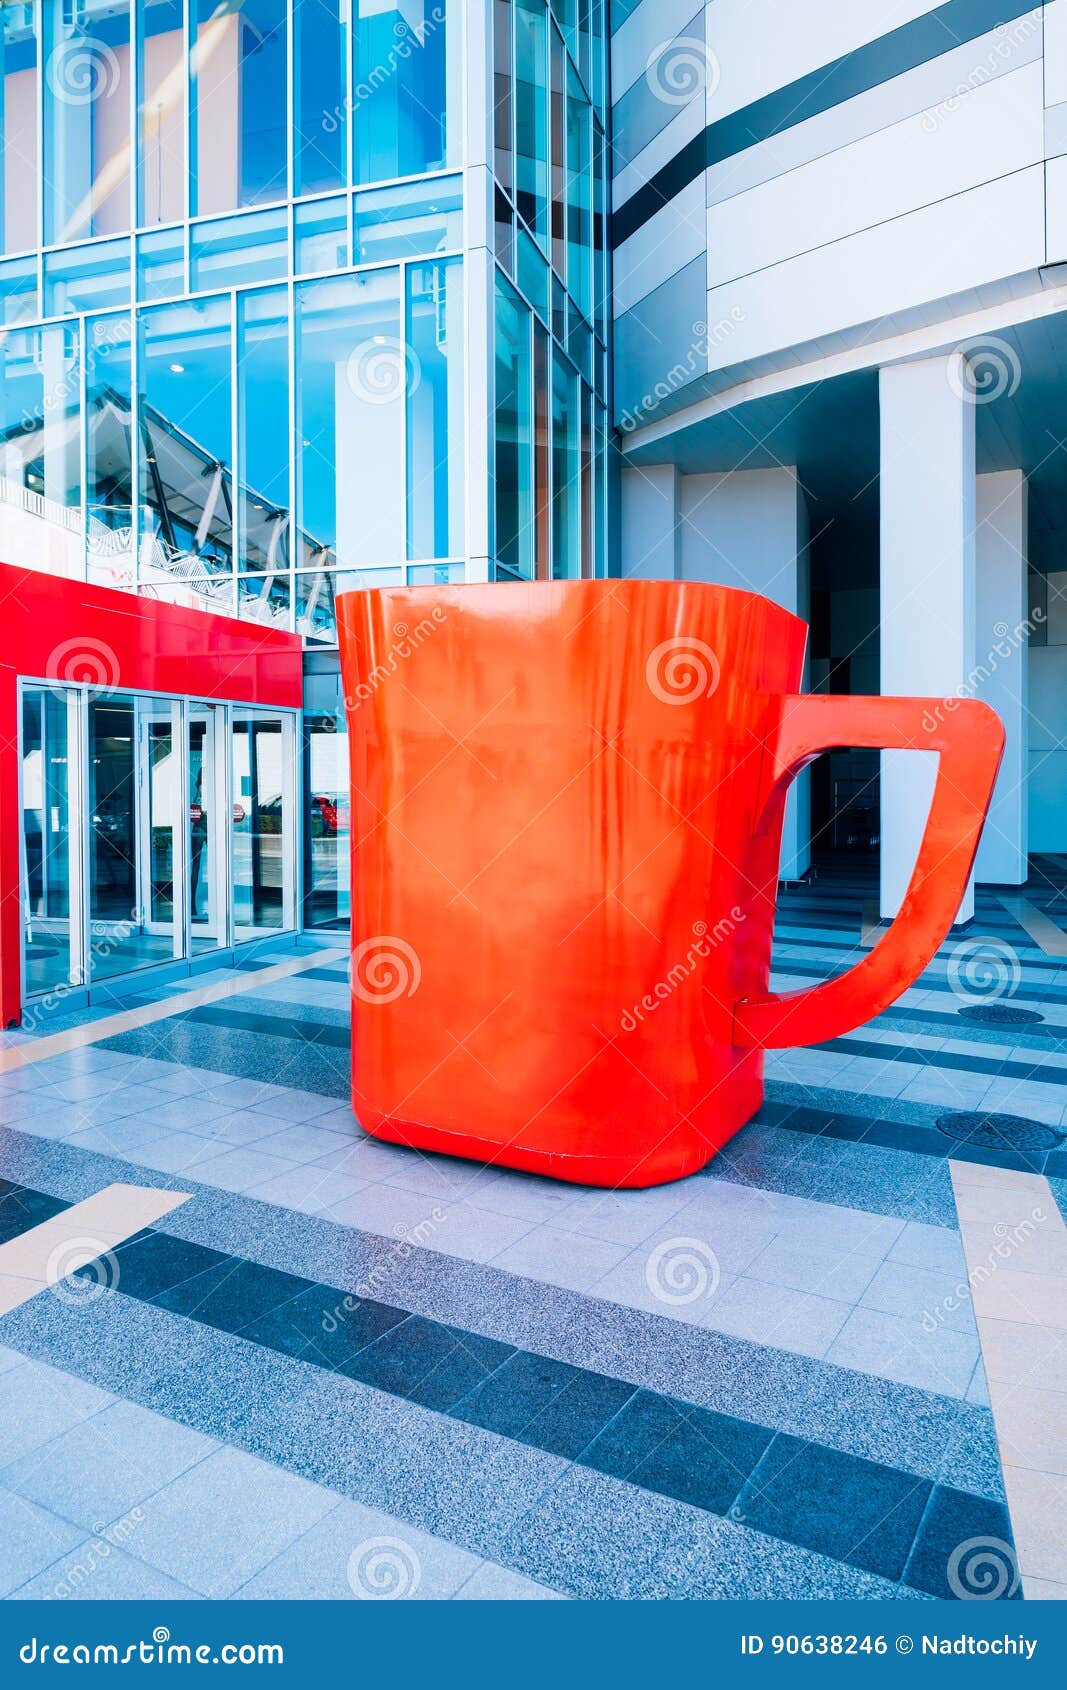 https://thumbs.dreamstime.com/z/huge-red-cup-coffee-several-meters-size-90638246.jpg